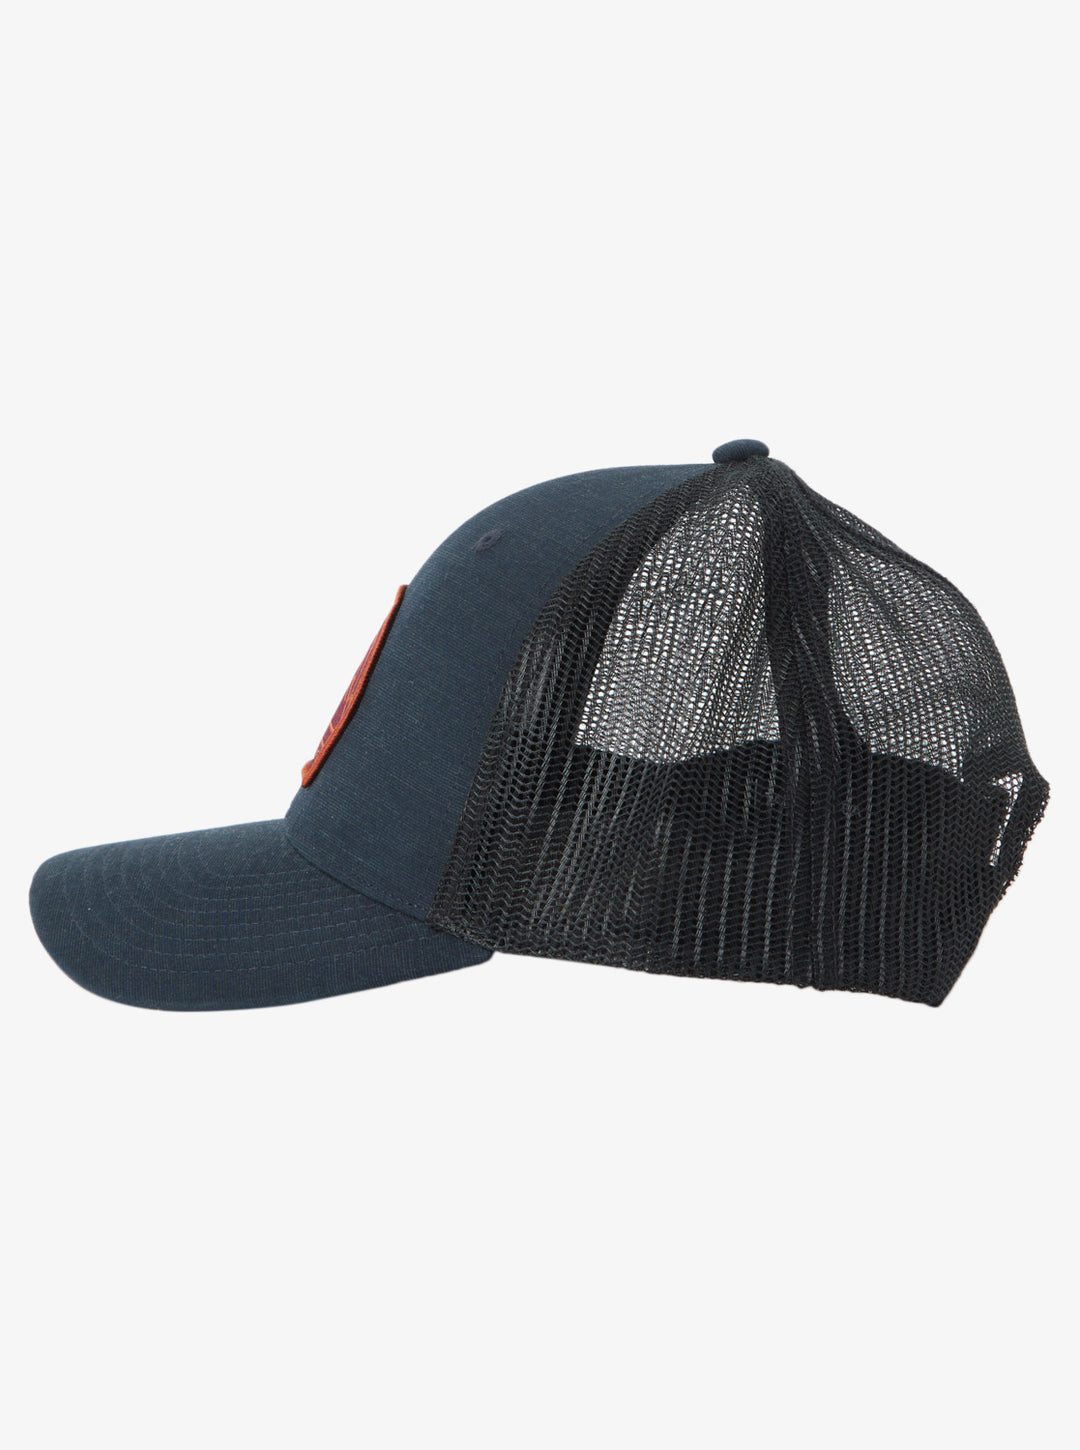 Quiksilver Loose Bait Trucker Hat - Black - Sun Diego Boardshop